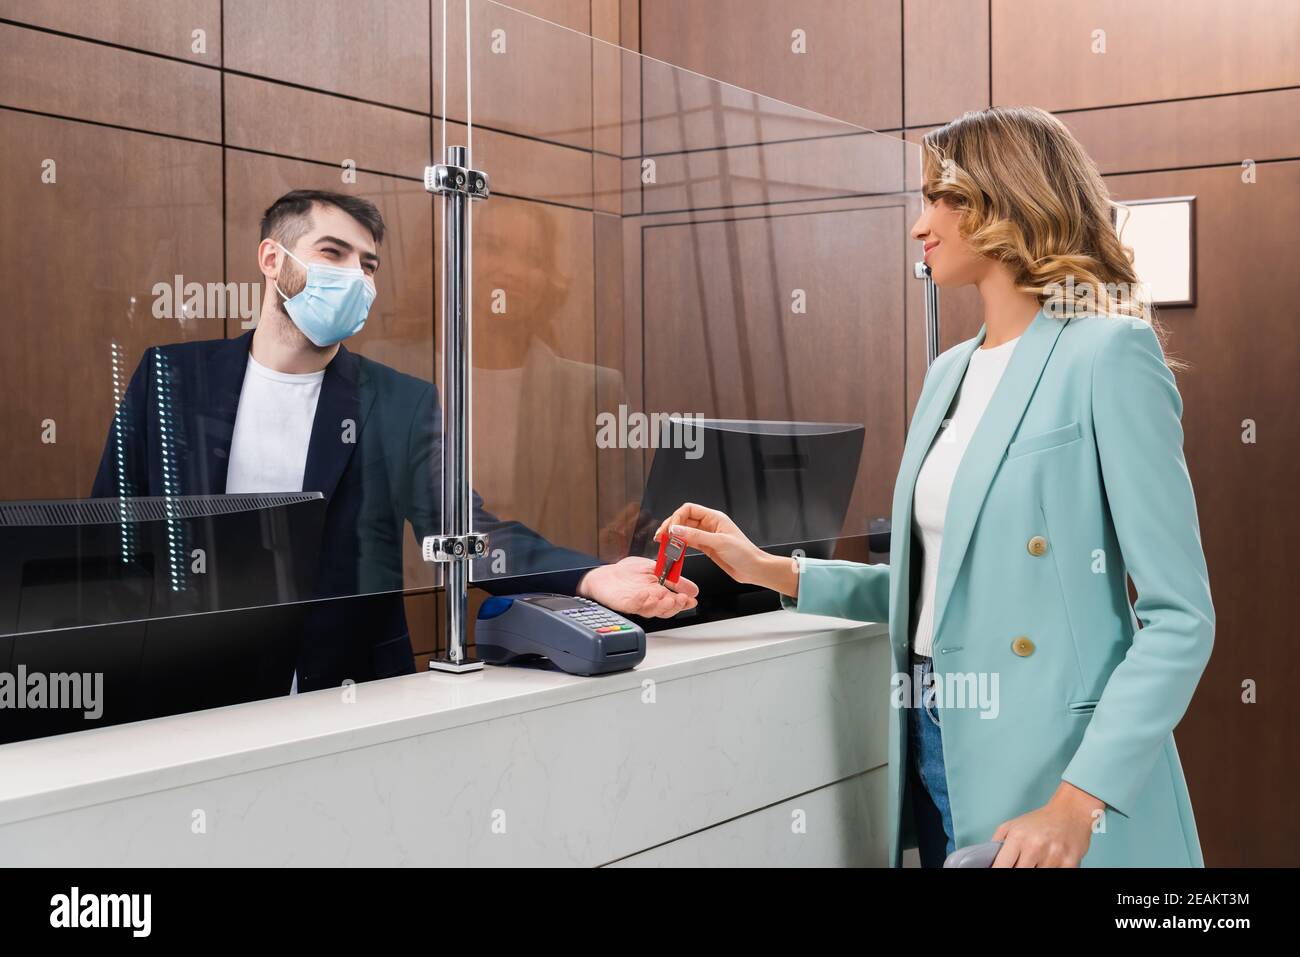 Hotelmanager in medizinischer Maske, der jungen Frau den Schlüssel gibt In der Lobby Stockfoto